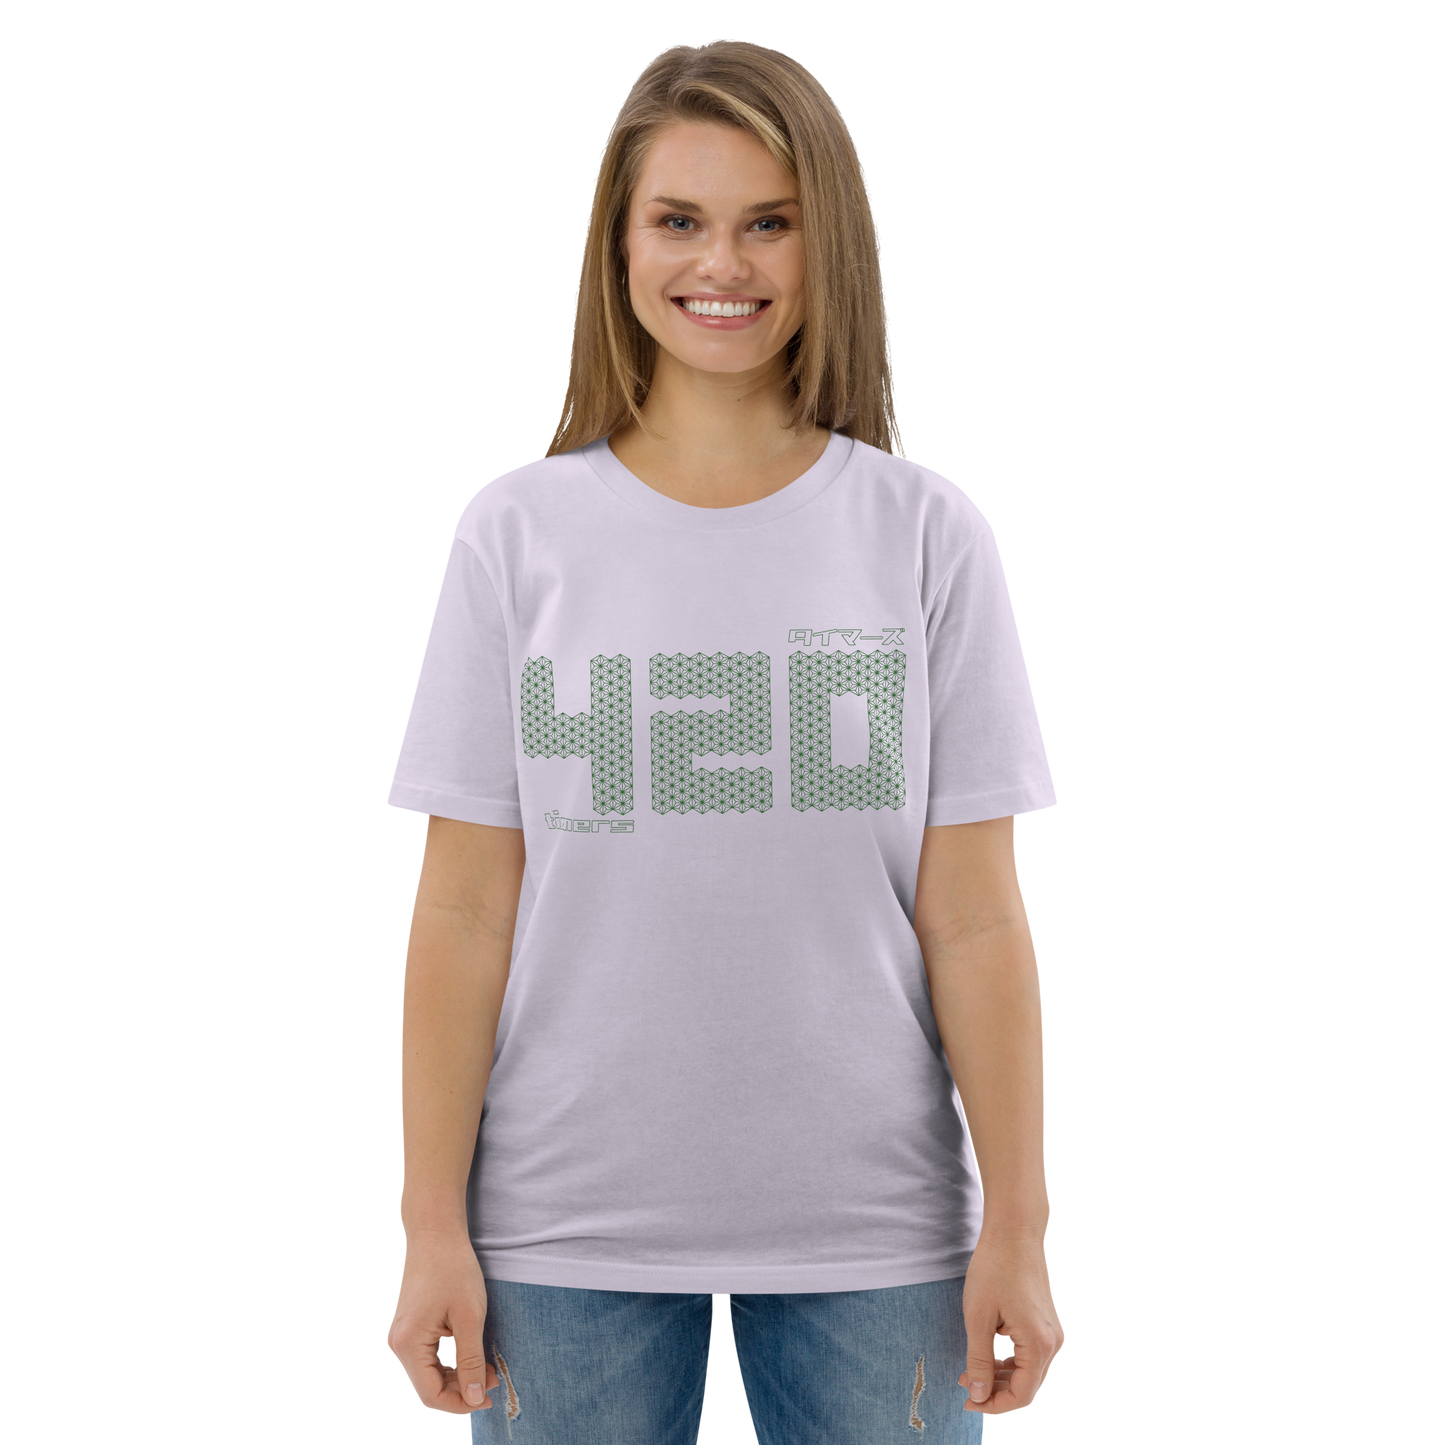 [420] Camiseta Temporizadores (Unisex)